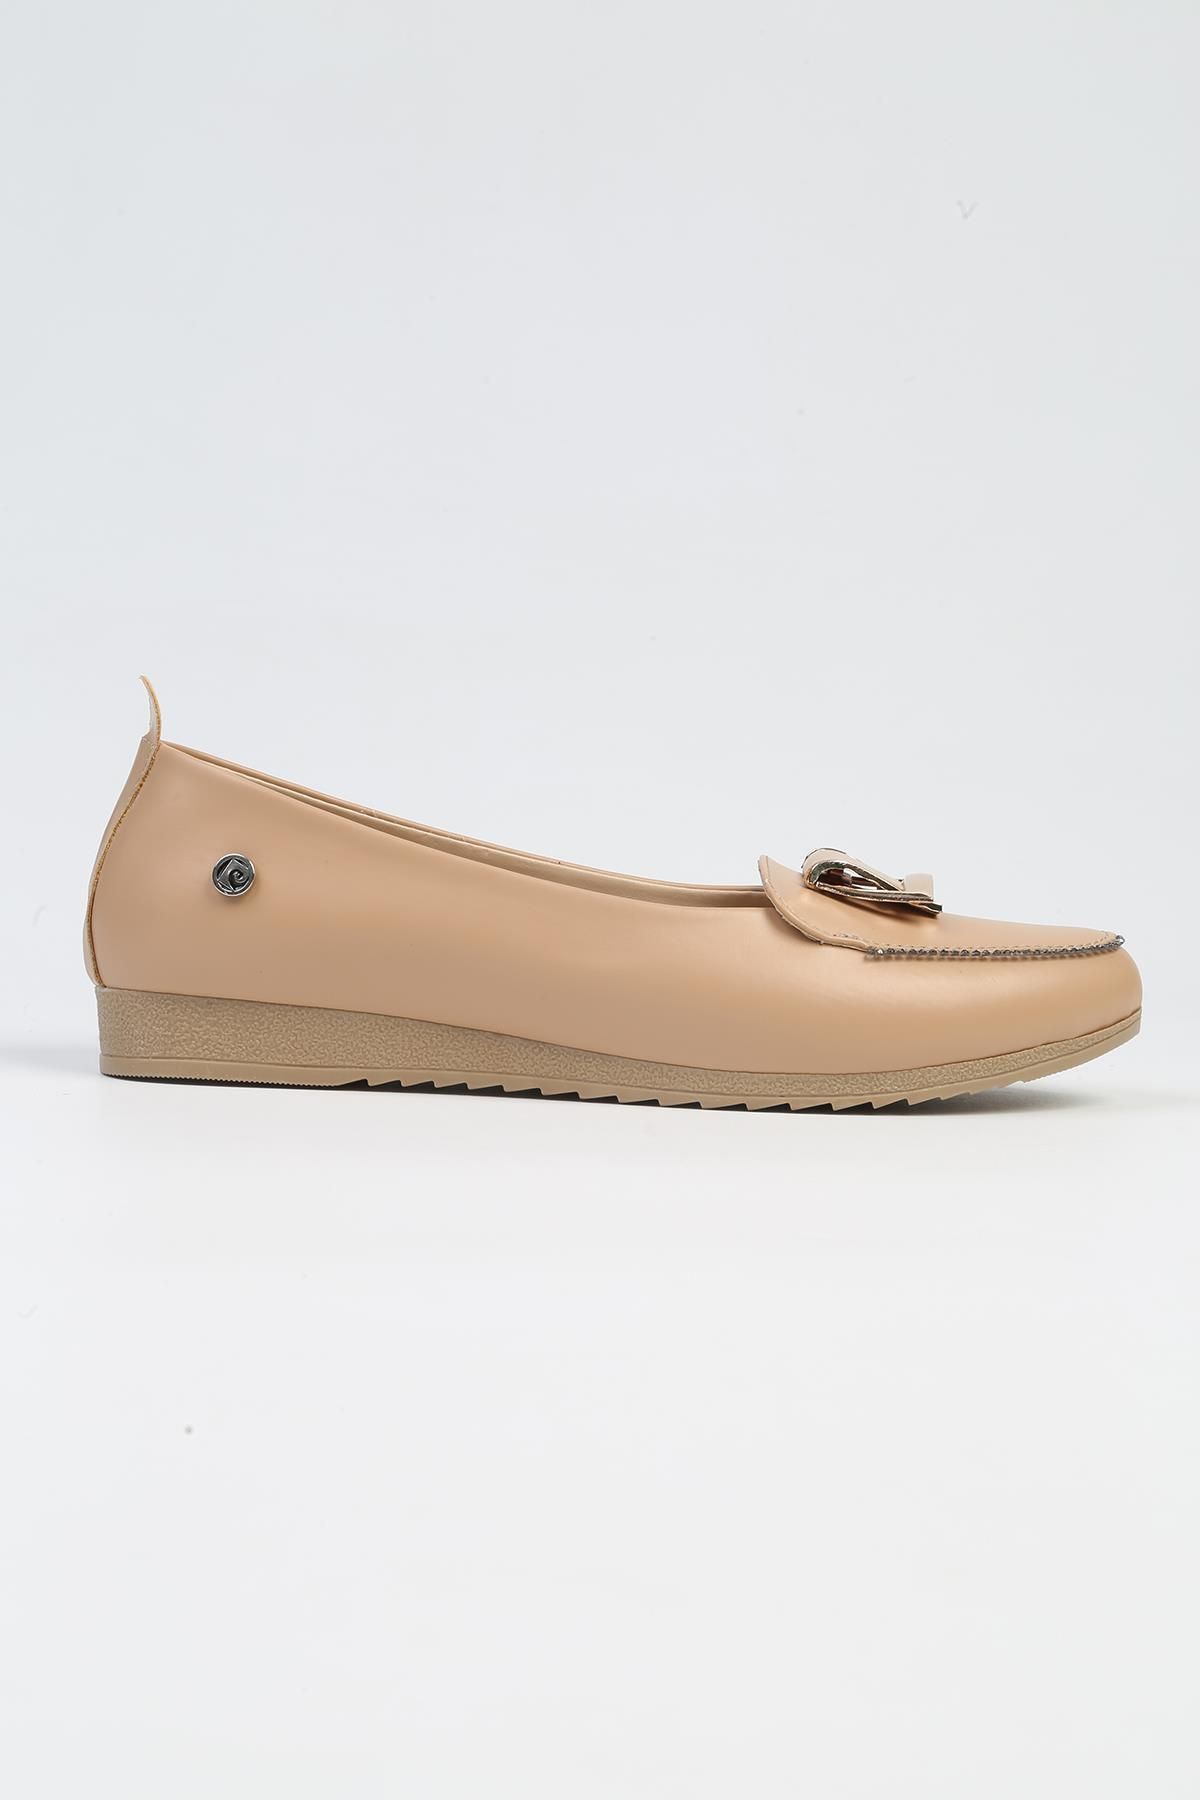 Pierre Cardin ® | PC-53019- 3962 Krem-Kadın Günlük Ayakkabı